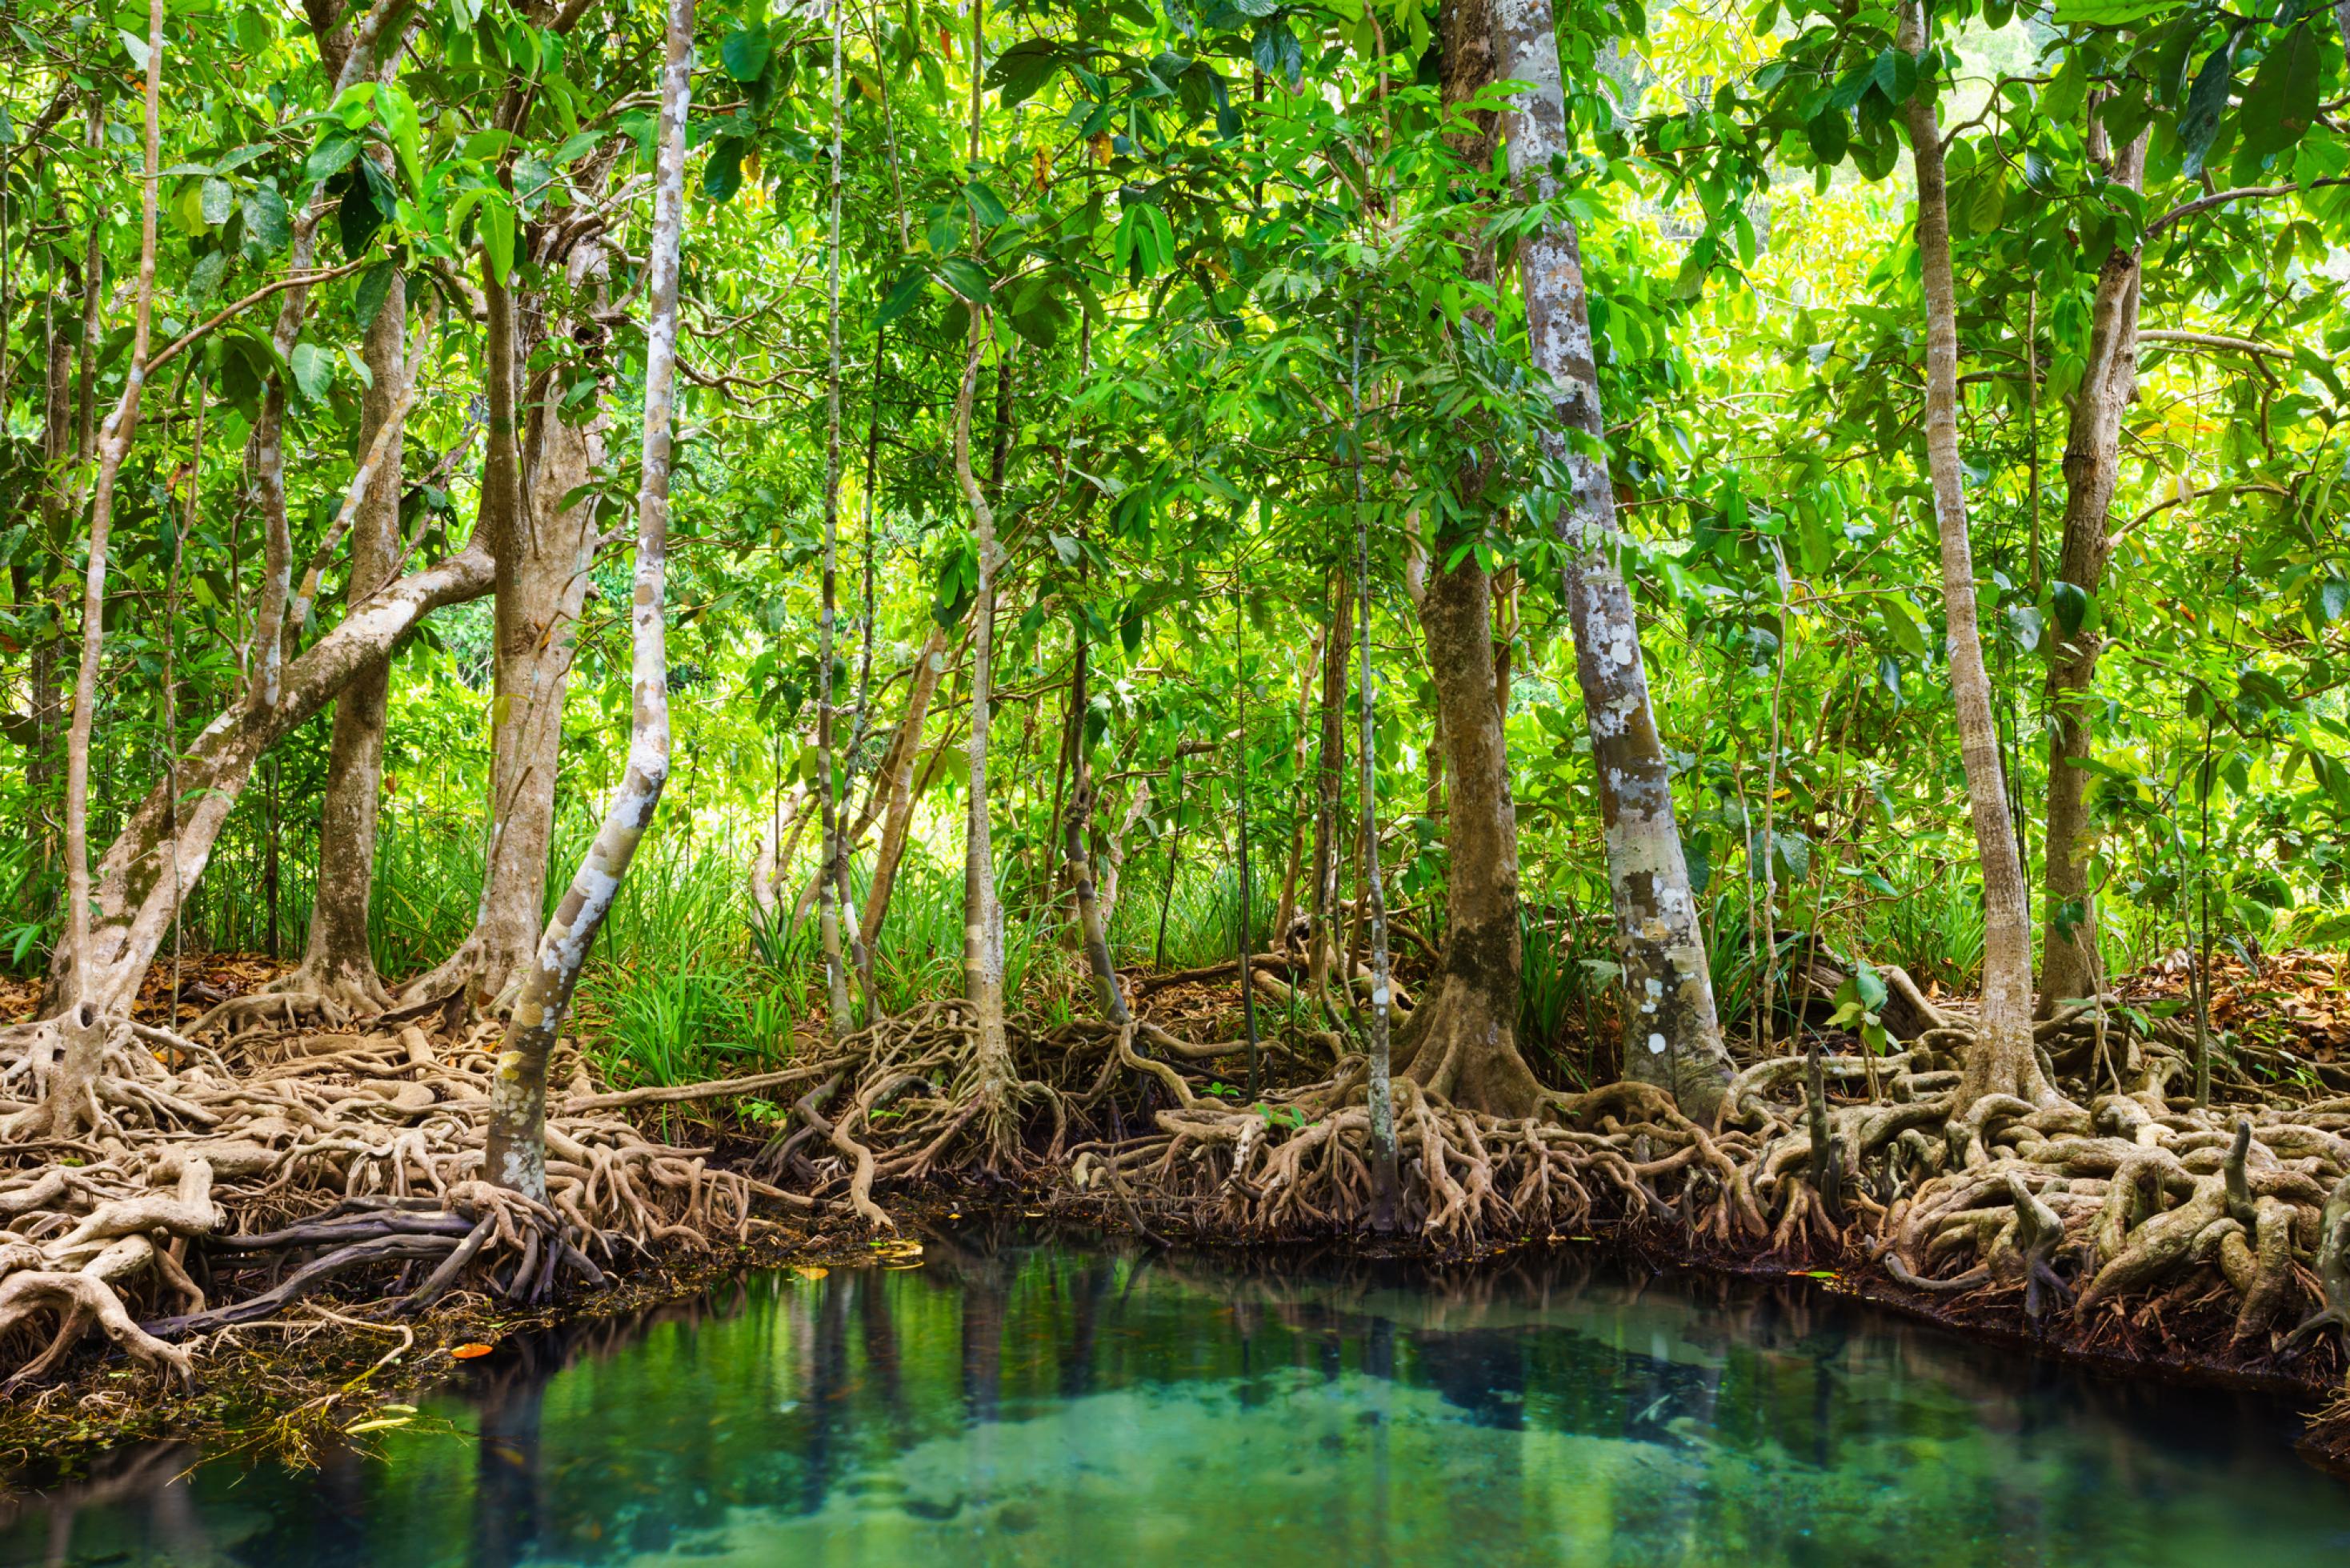 Mangrovenwald in Thailand, die Bäume stehen auf Stelzenwurzeln im Wasser